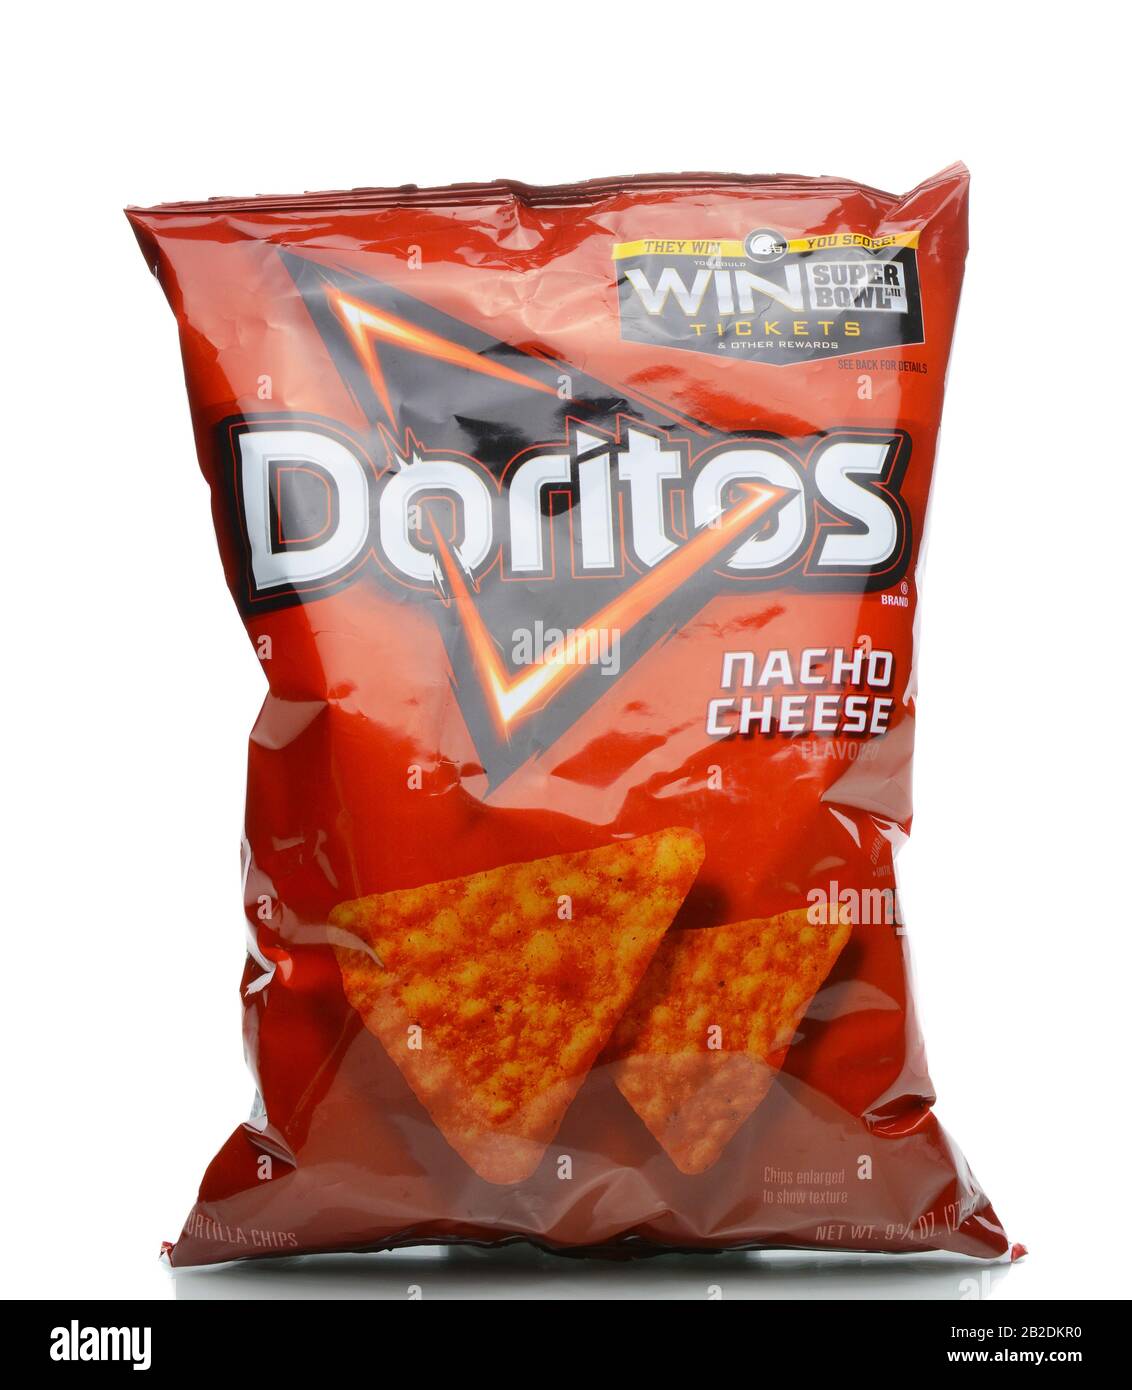 Irvine, KALIFORNIEN - 4. JANUAR 2018: Doritos Nacho Käsespäne. Aromatisierte Tortilla-Chips, die seit 1964 von Frito-Lay, einer Tochtergesellschaft von PepsiCo, hergestellt werden. Stockfoto